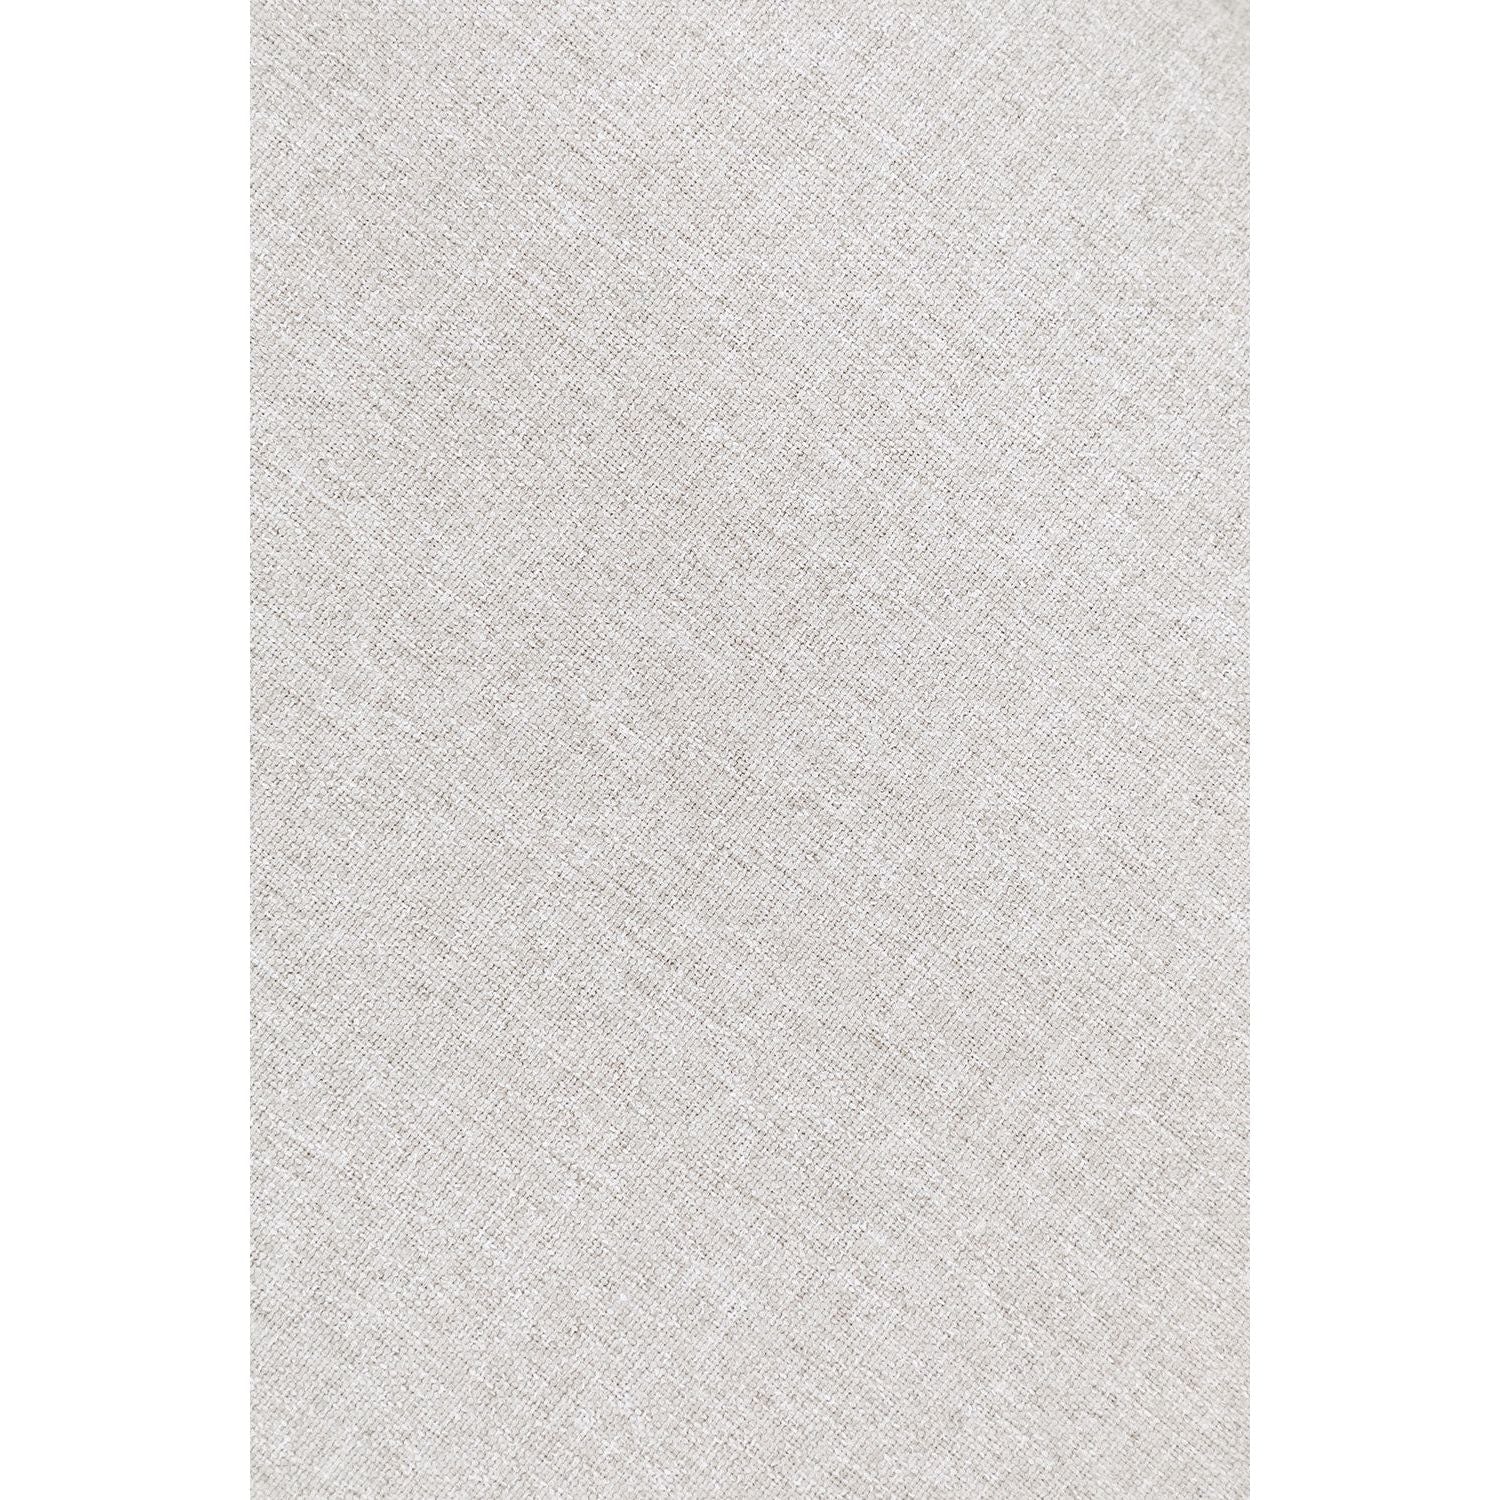 Modulinė sofa MOLBERT, smėlio spalva